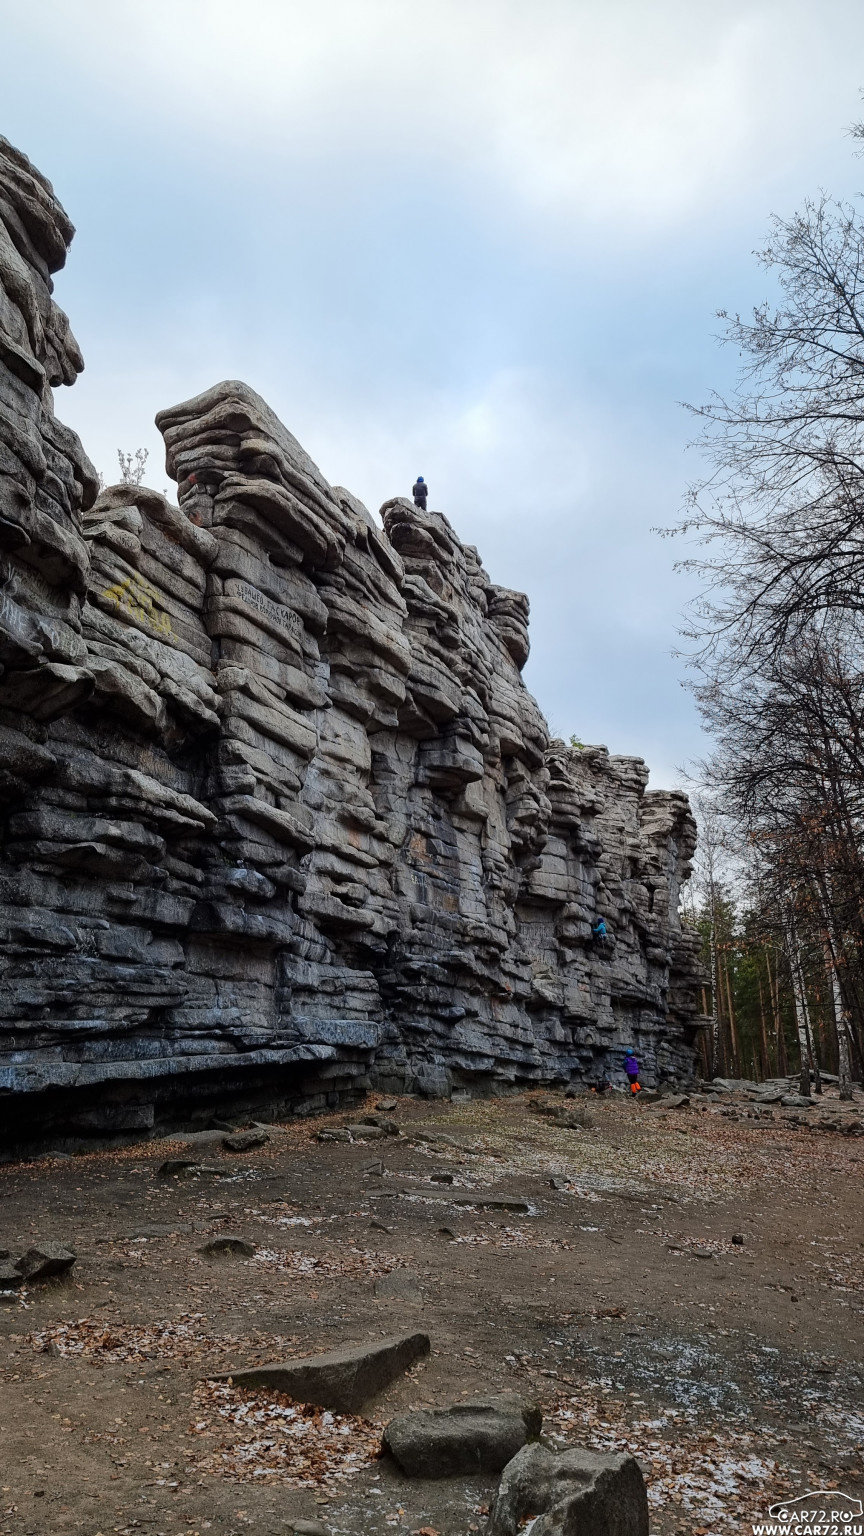 Гора со скалами находится в 4,5 километра к югу от посёлка Исеть и в 20 километрах на северо-запад от центра Екатеринбурга, в лесном левобережье реки Семипалатинки